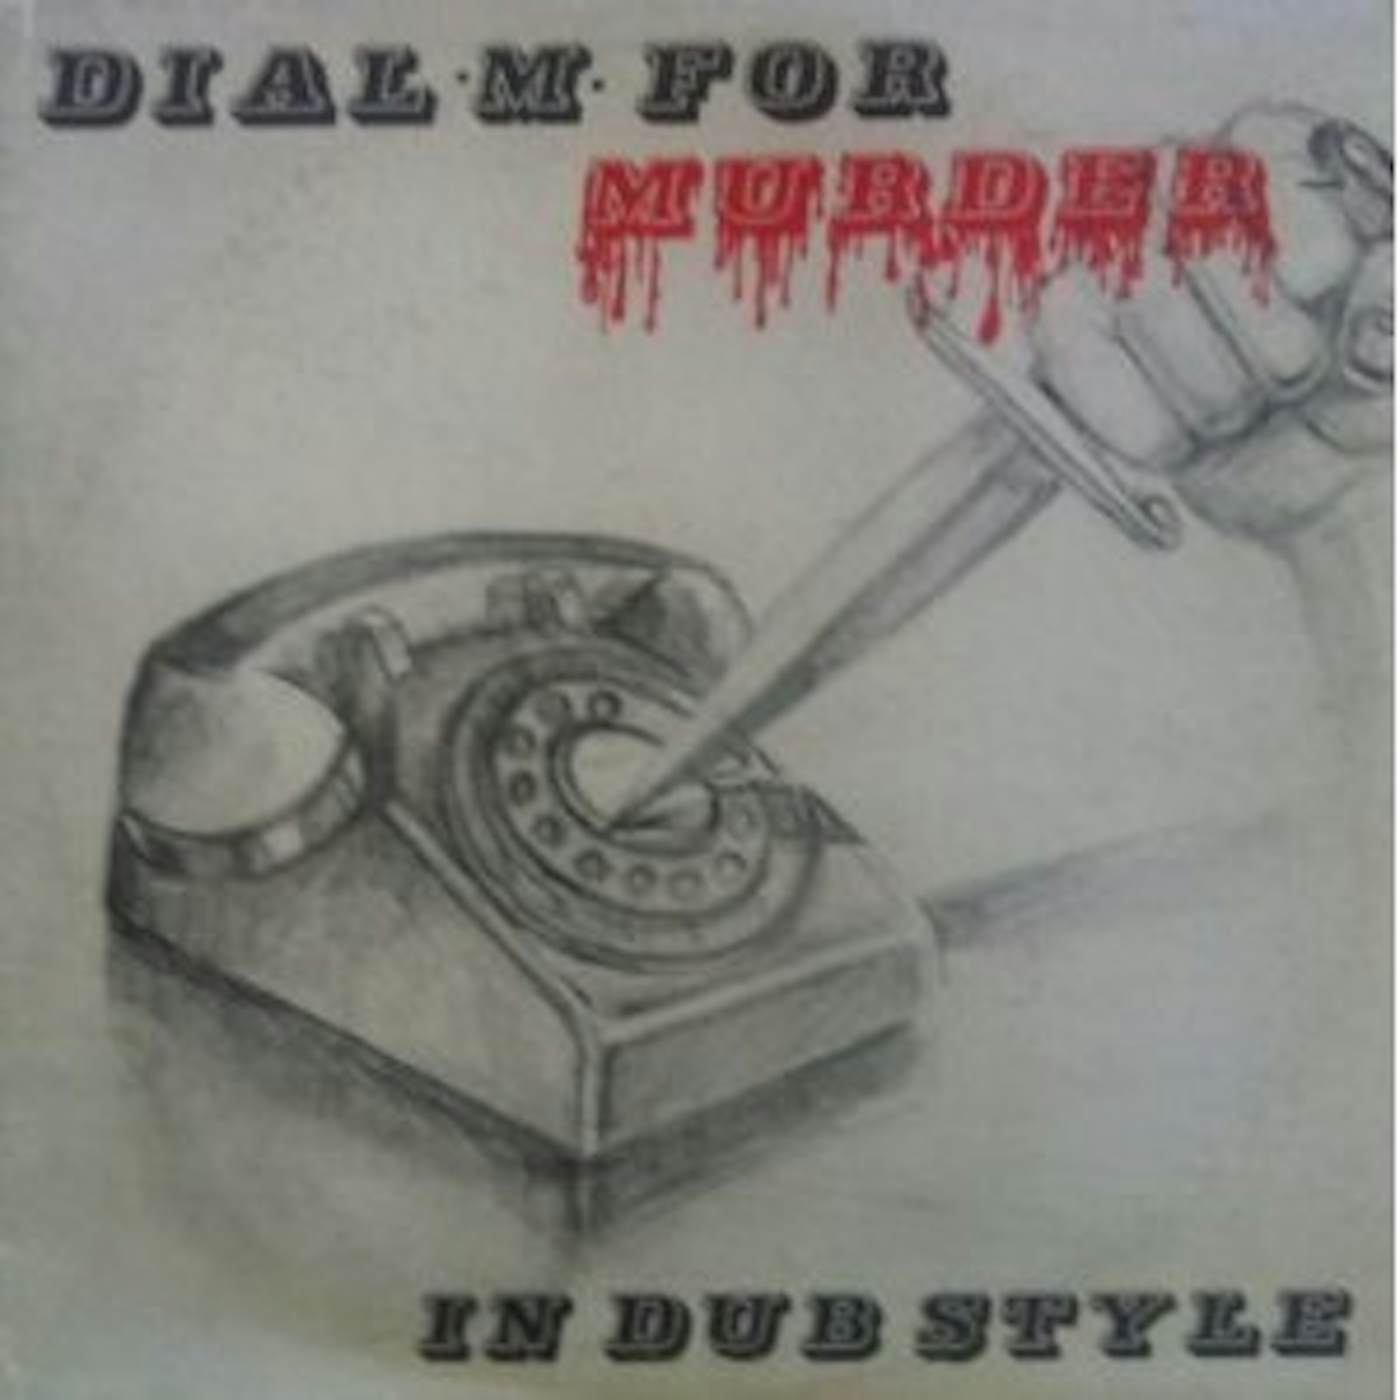 Phil Pratt Dial M For Murder In Dub Style Vinyl Record